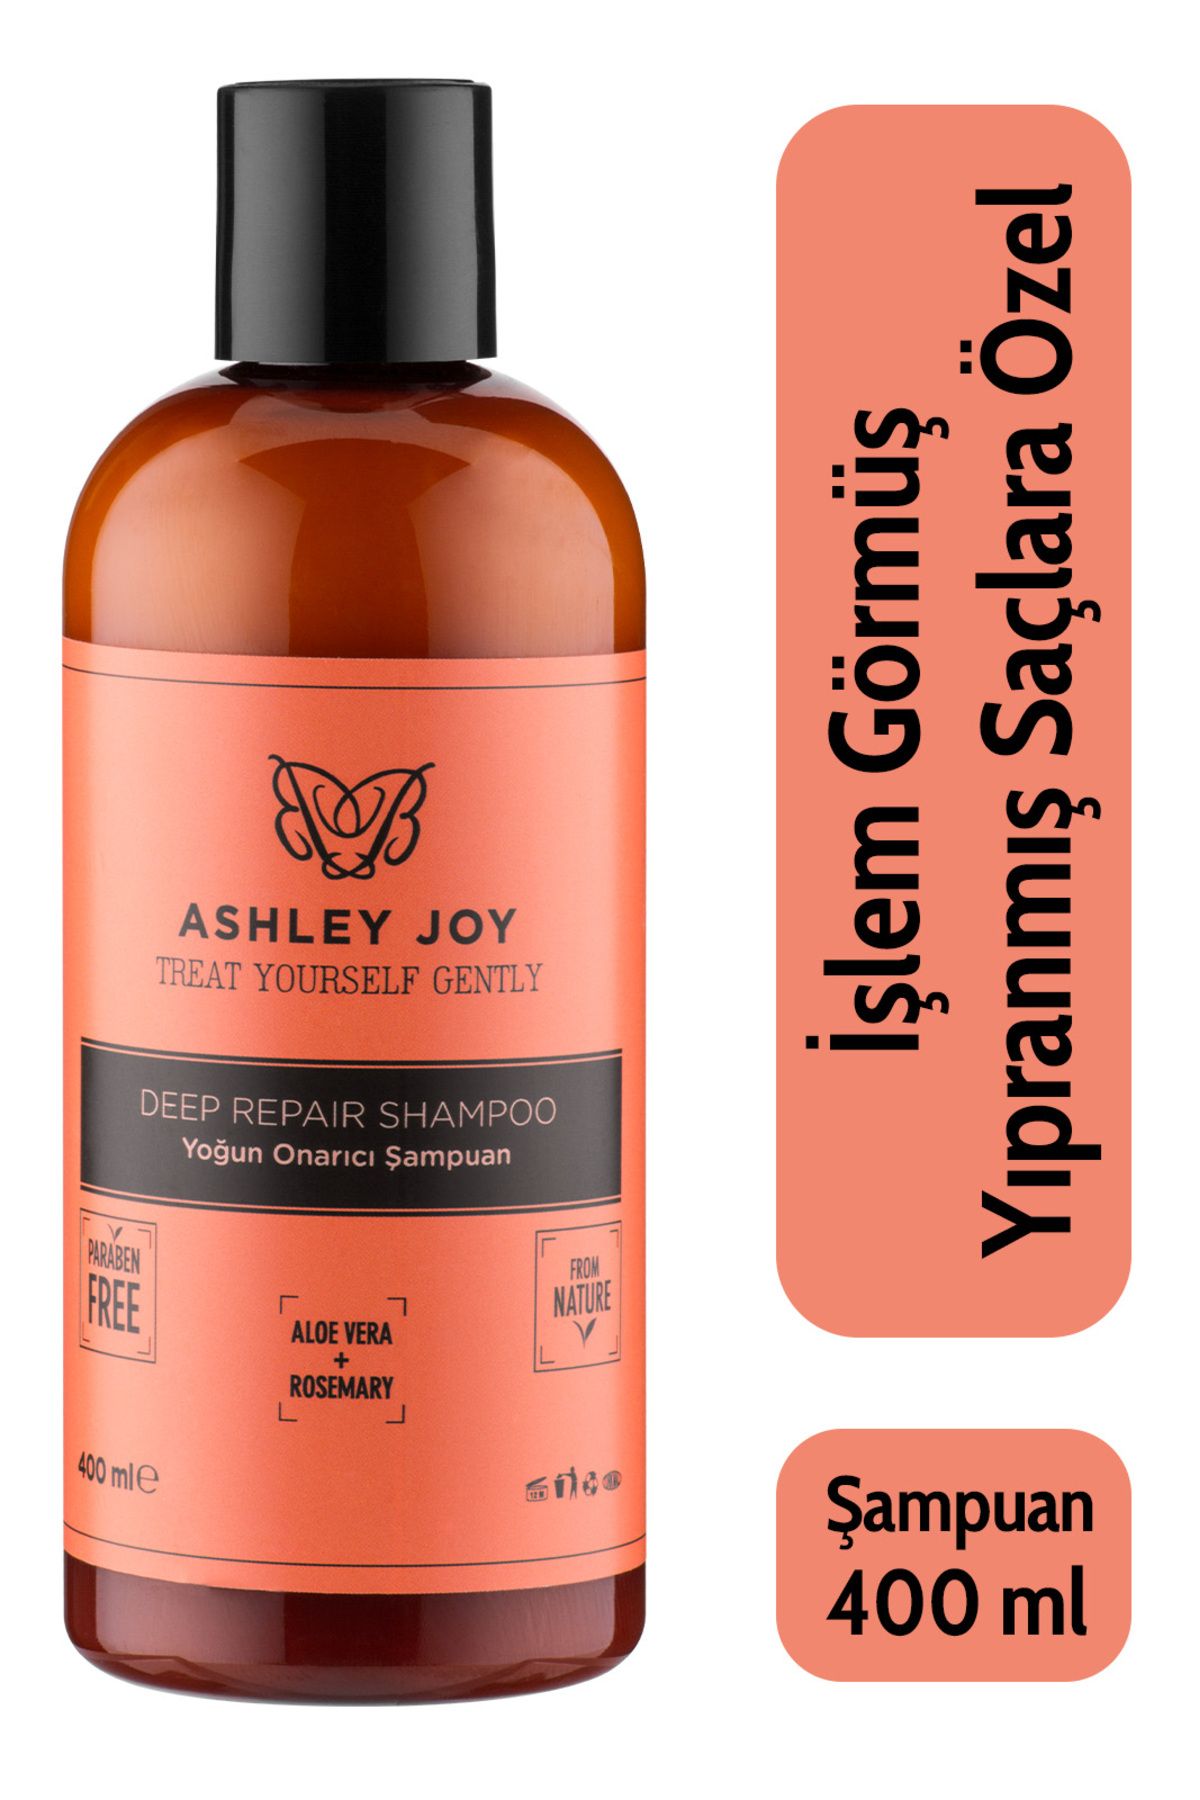 Ashley Joy İşlem Görmüş Yıpranmış Saçlara Özel Biberiye Keratin Içeren Yoğun Onarıcı Şampuan 400 ml